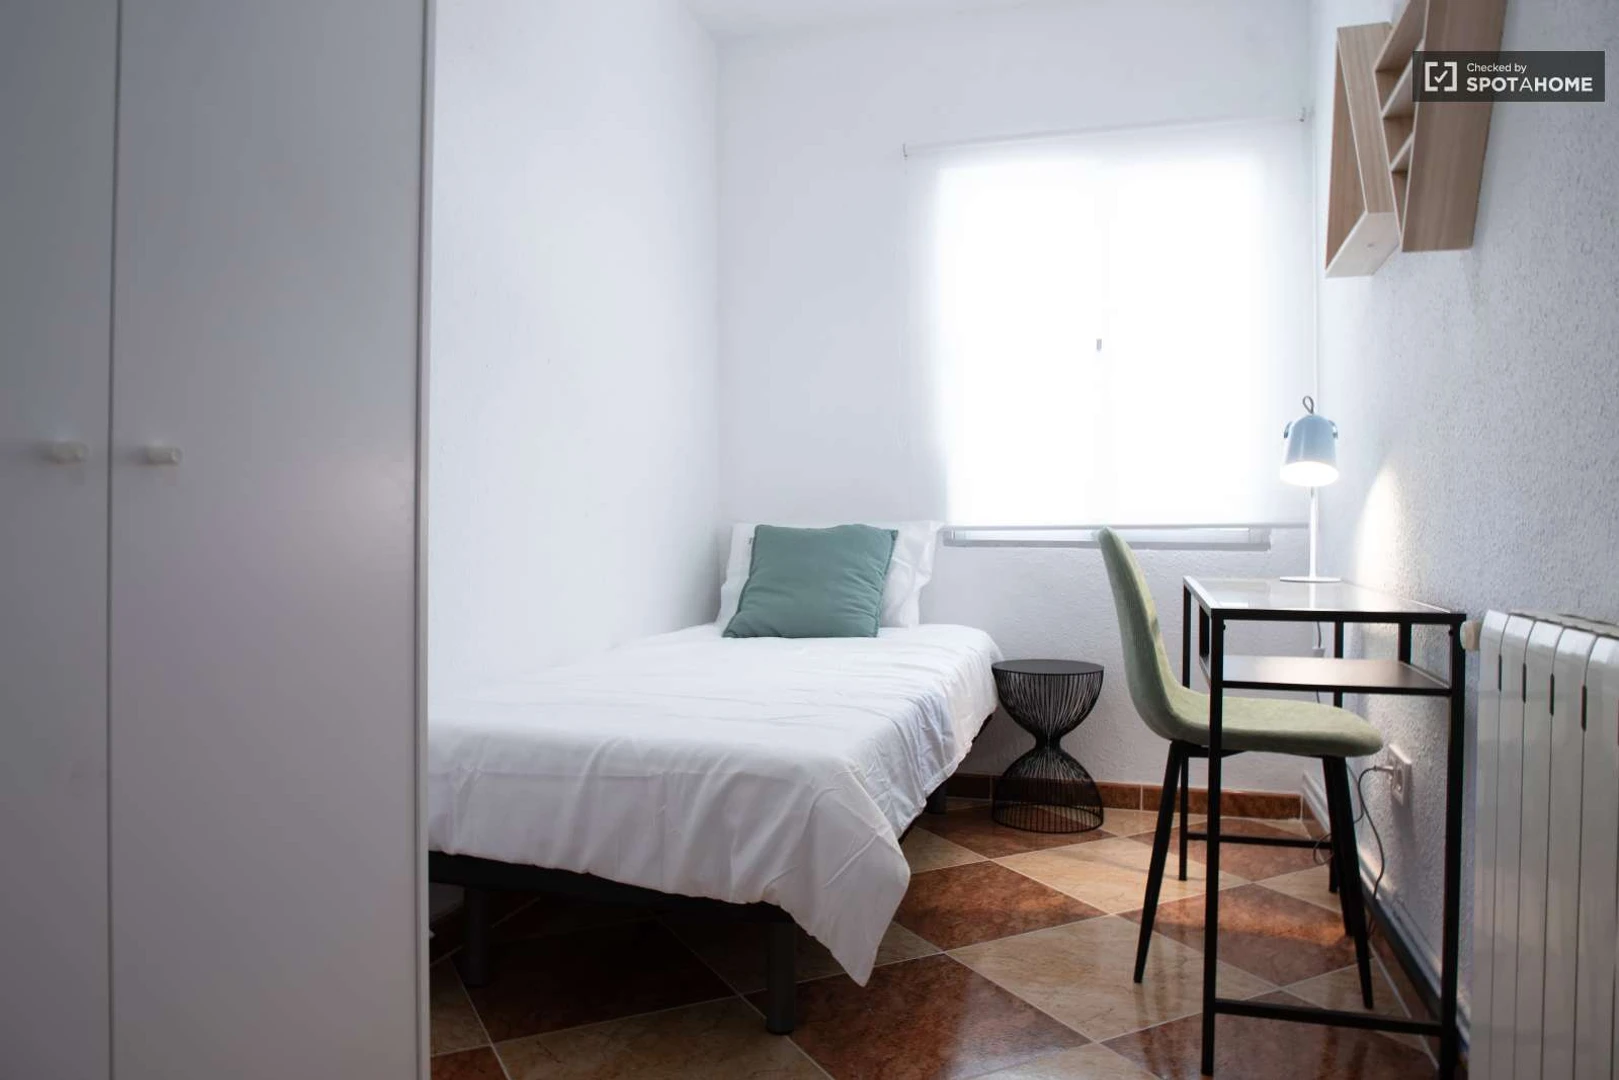 Pokój do wynajęcia z podwójnym łóżkiem w Fuenlabrada